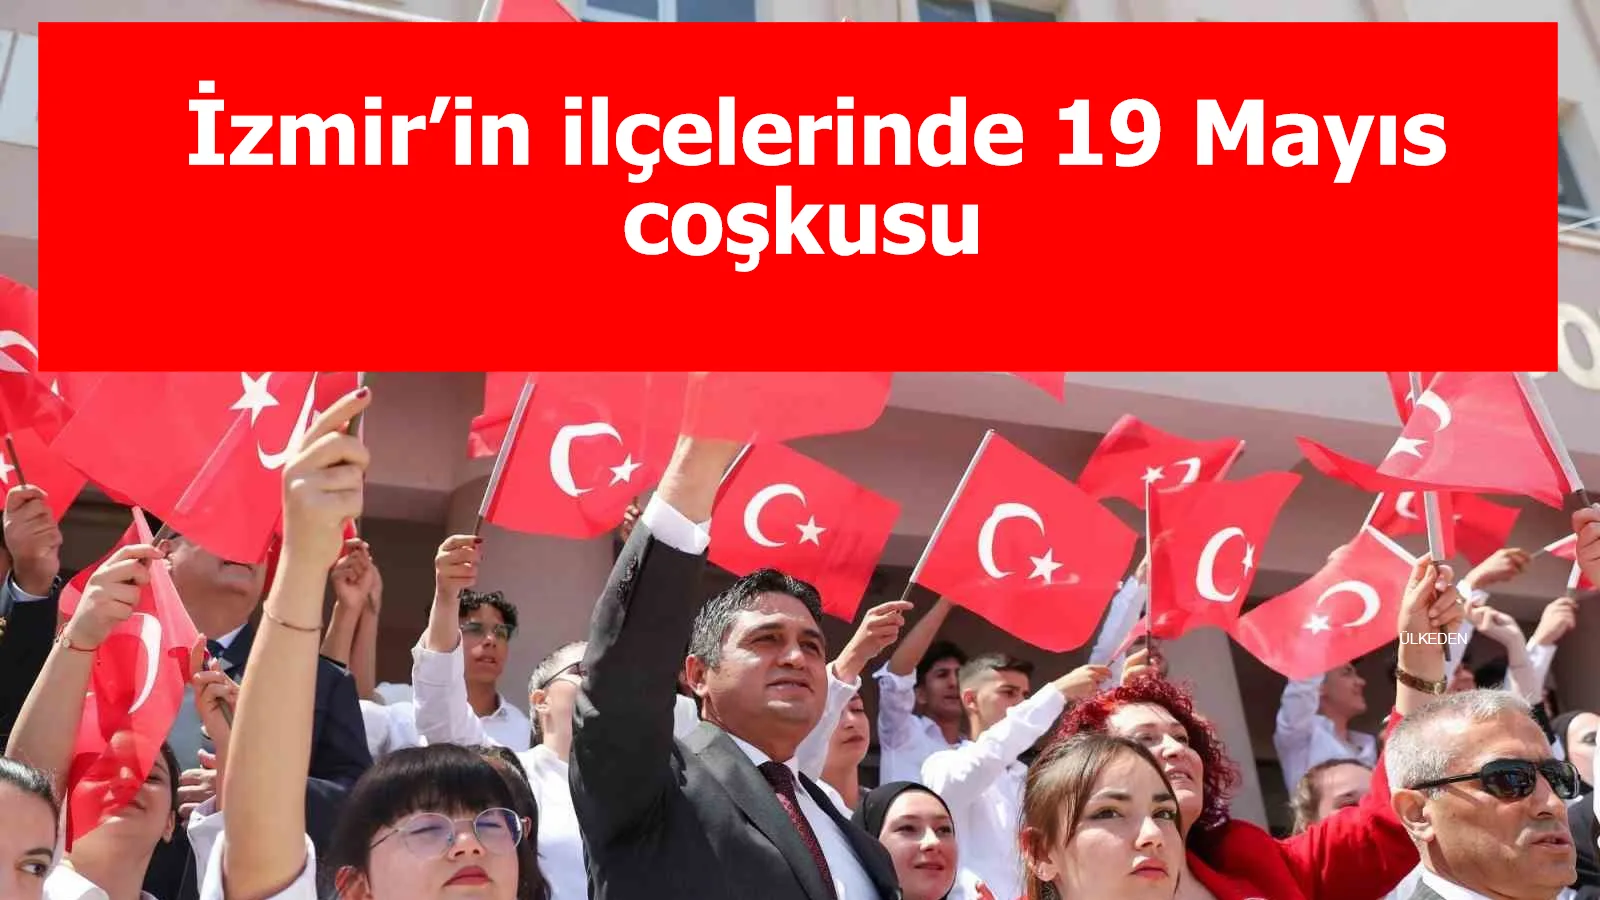 İzmir’in ilçelerinde 19 Mayıs coşkusu